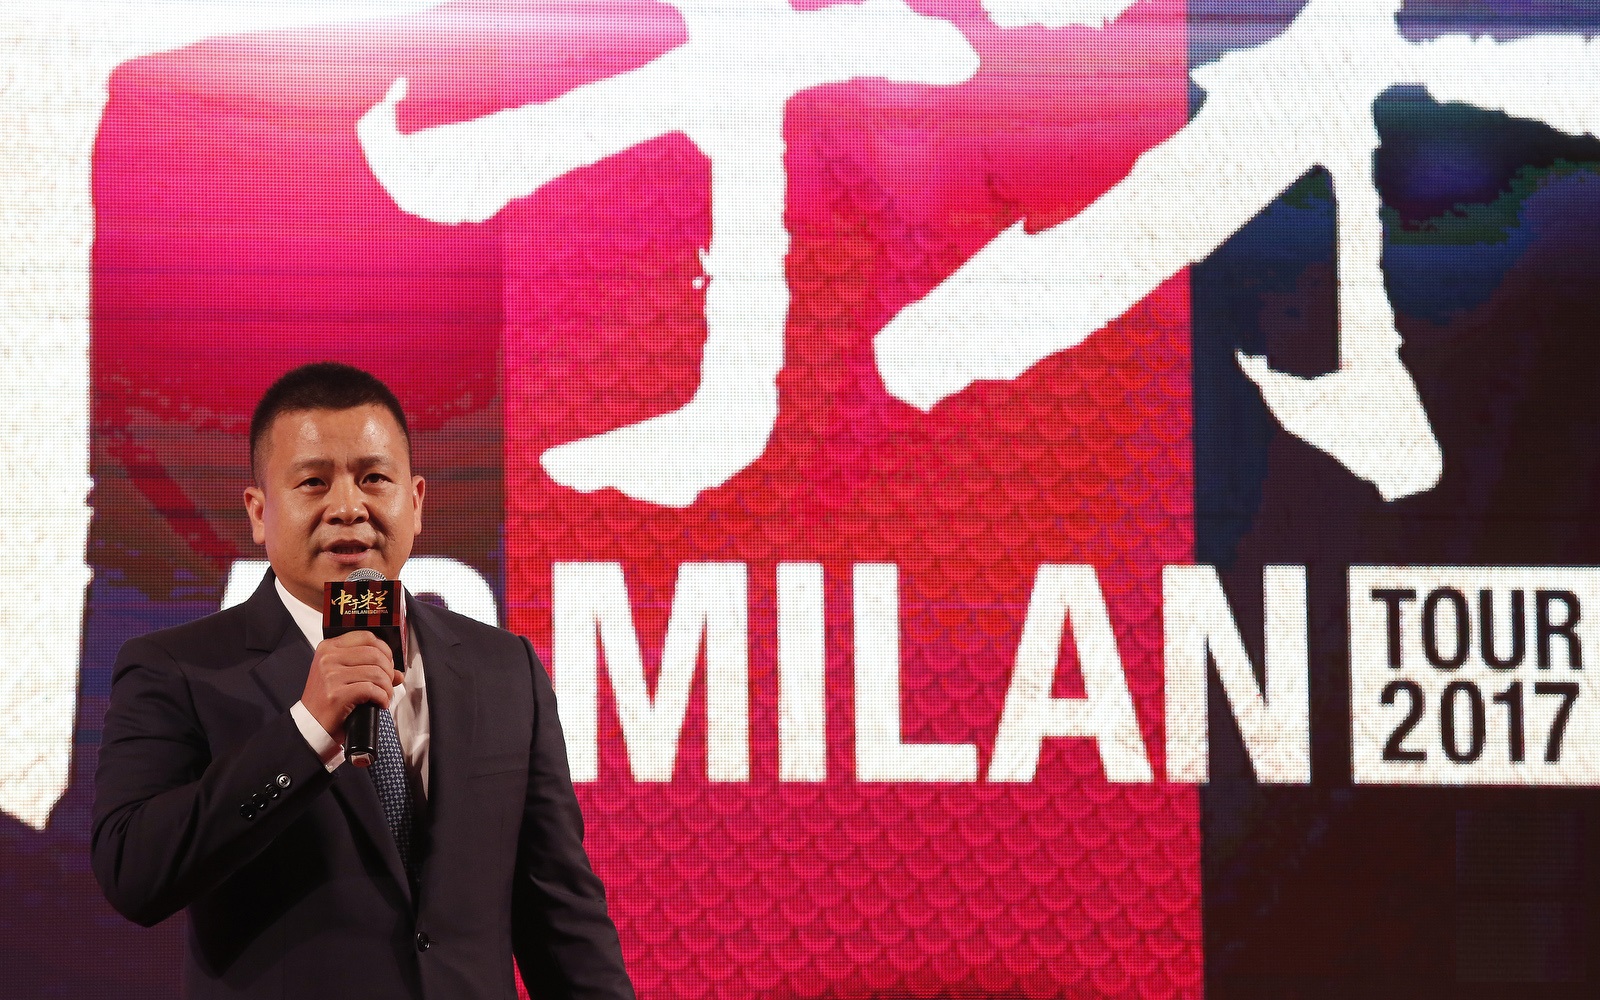 La Stampa: la Procura indaga sul Milan cinese, soldi riciclati per acquisire il club?